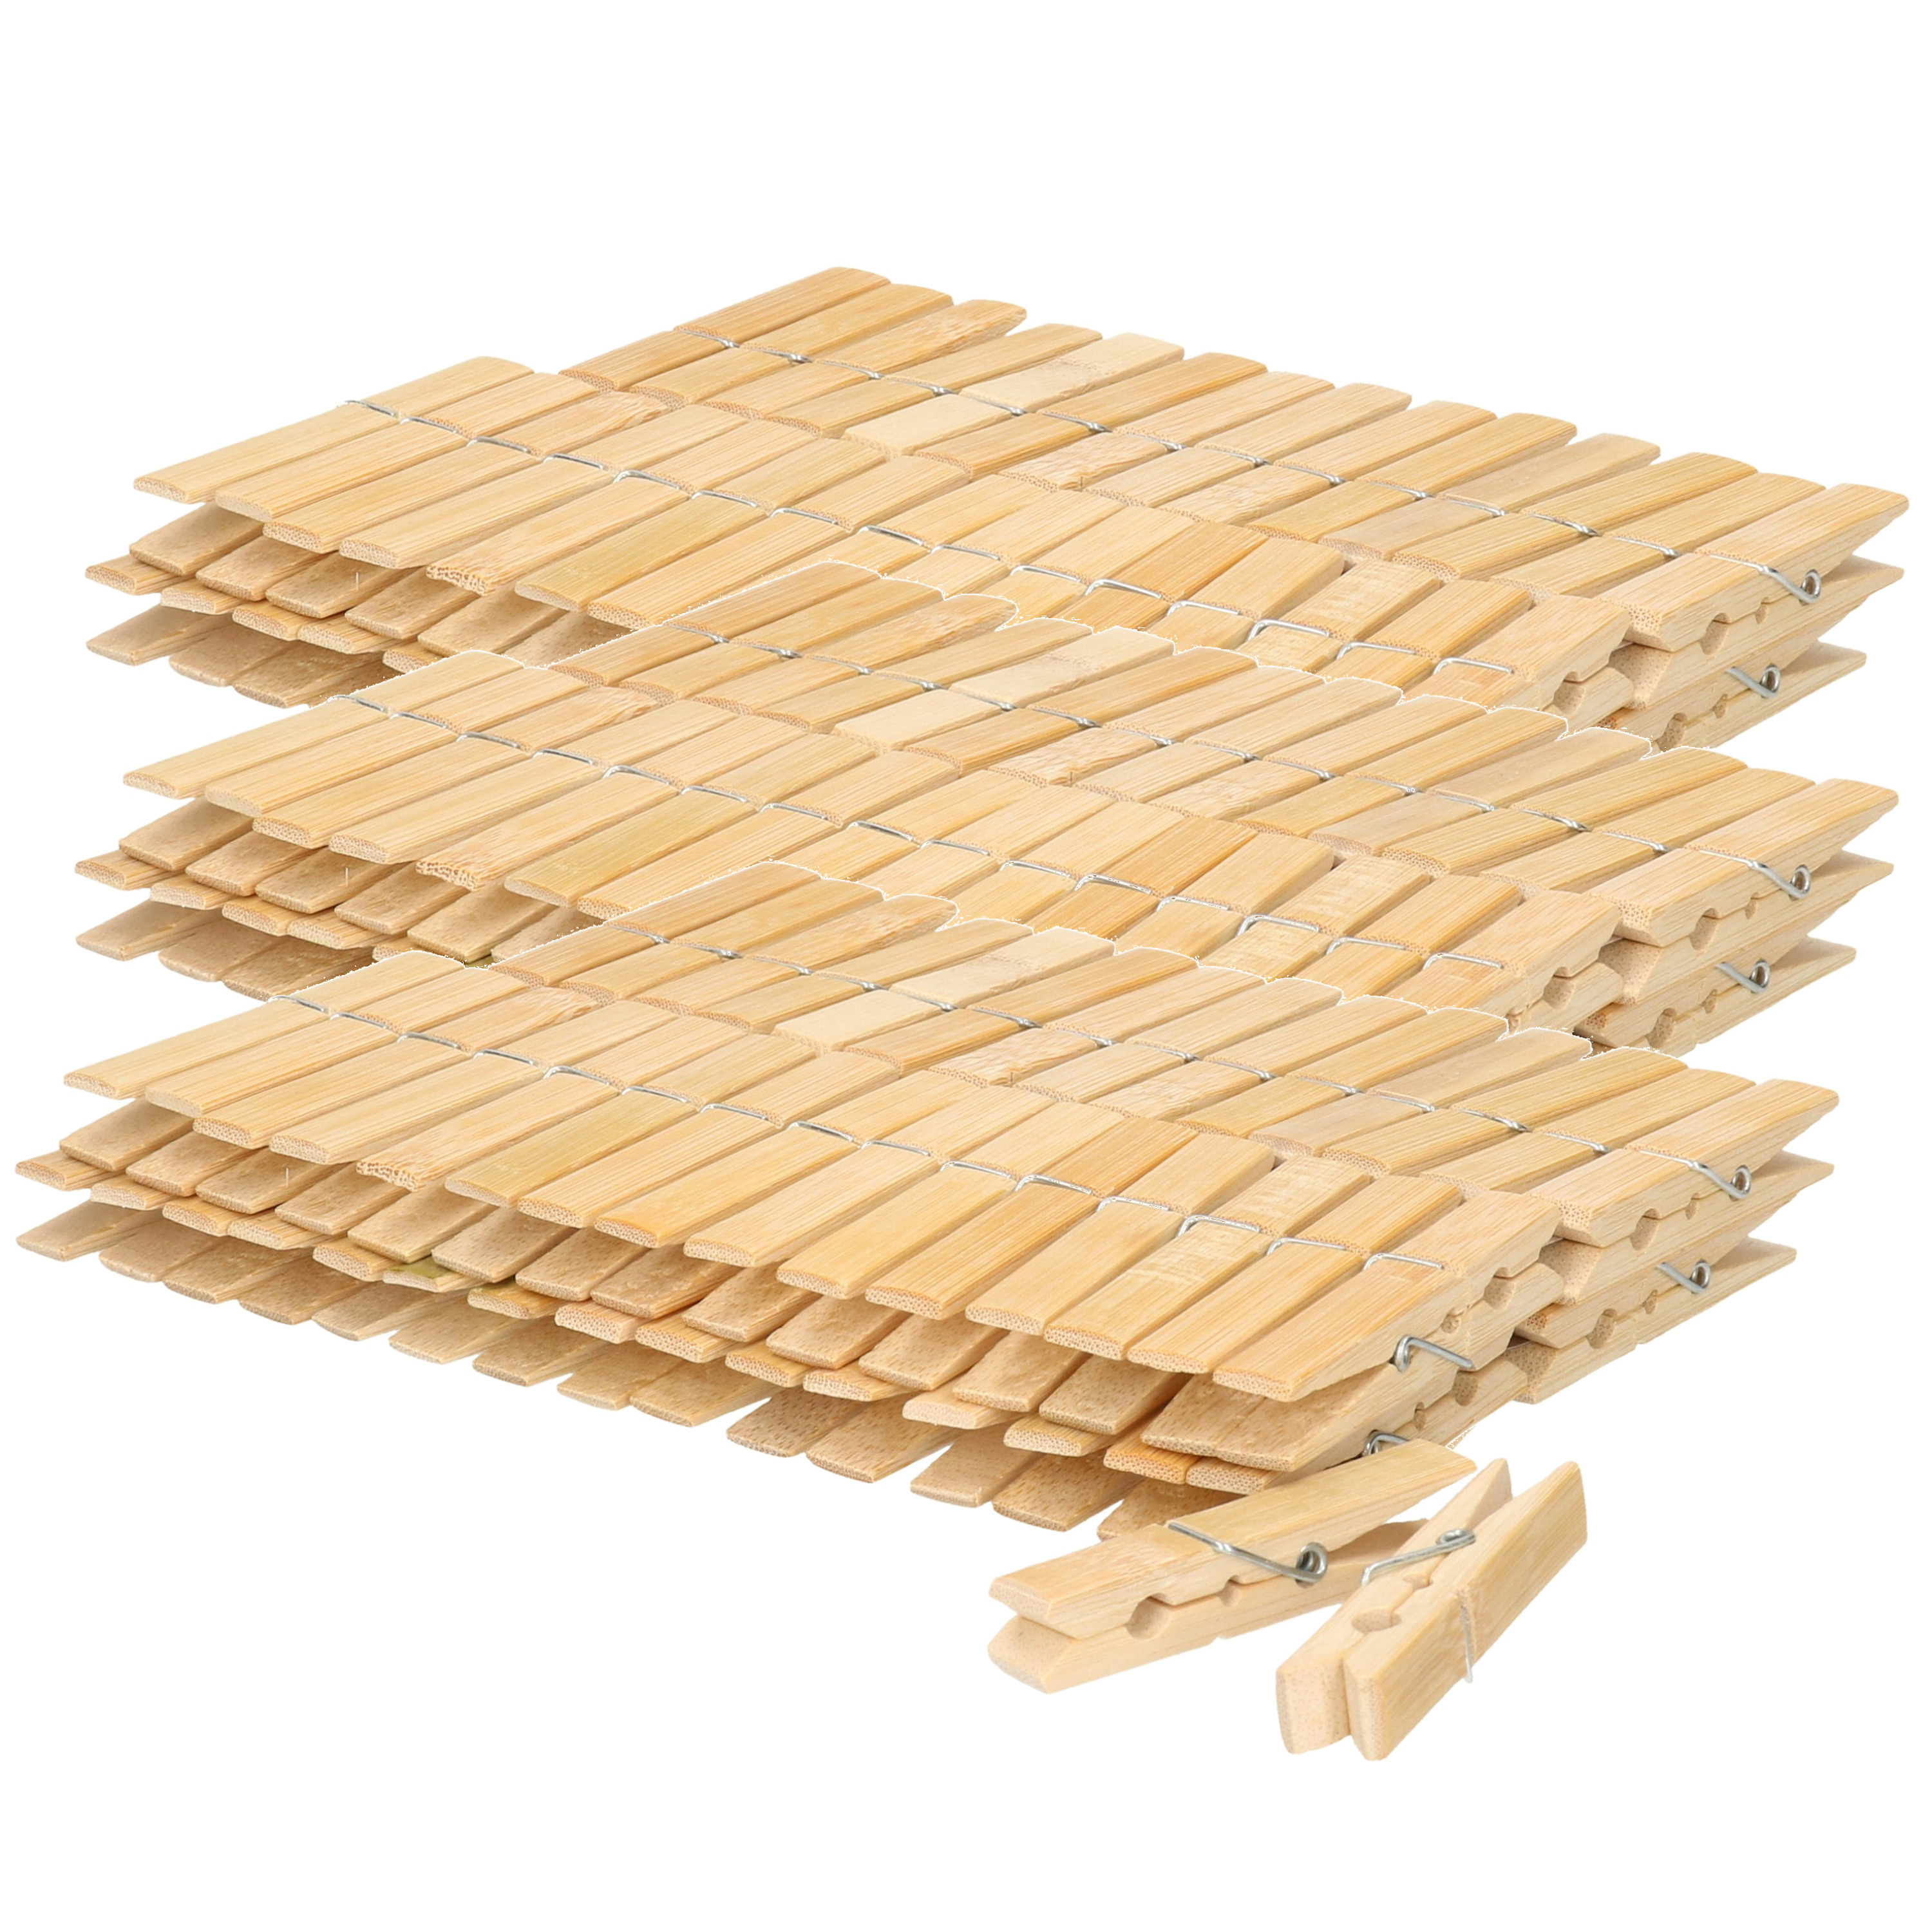 180x stuks stevige houten wasknijpers van 7 cm